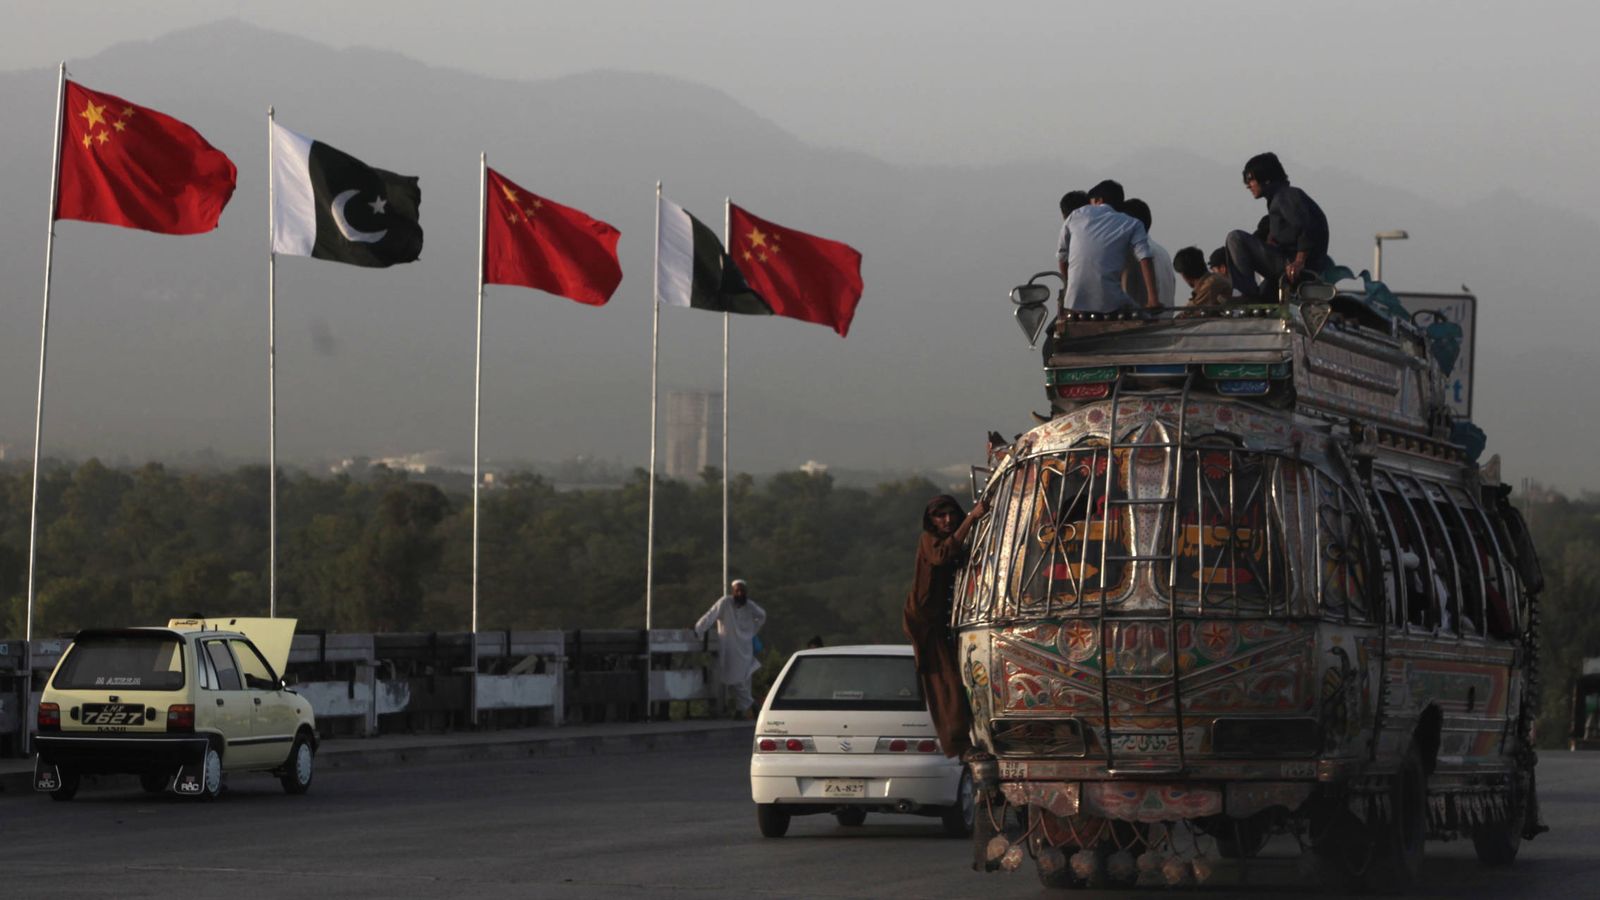 Foto: Banderas chinas y paquistaníes en una carretera de Islamabad durante una visita oficial china, en mayo de 2013. (Reuters)